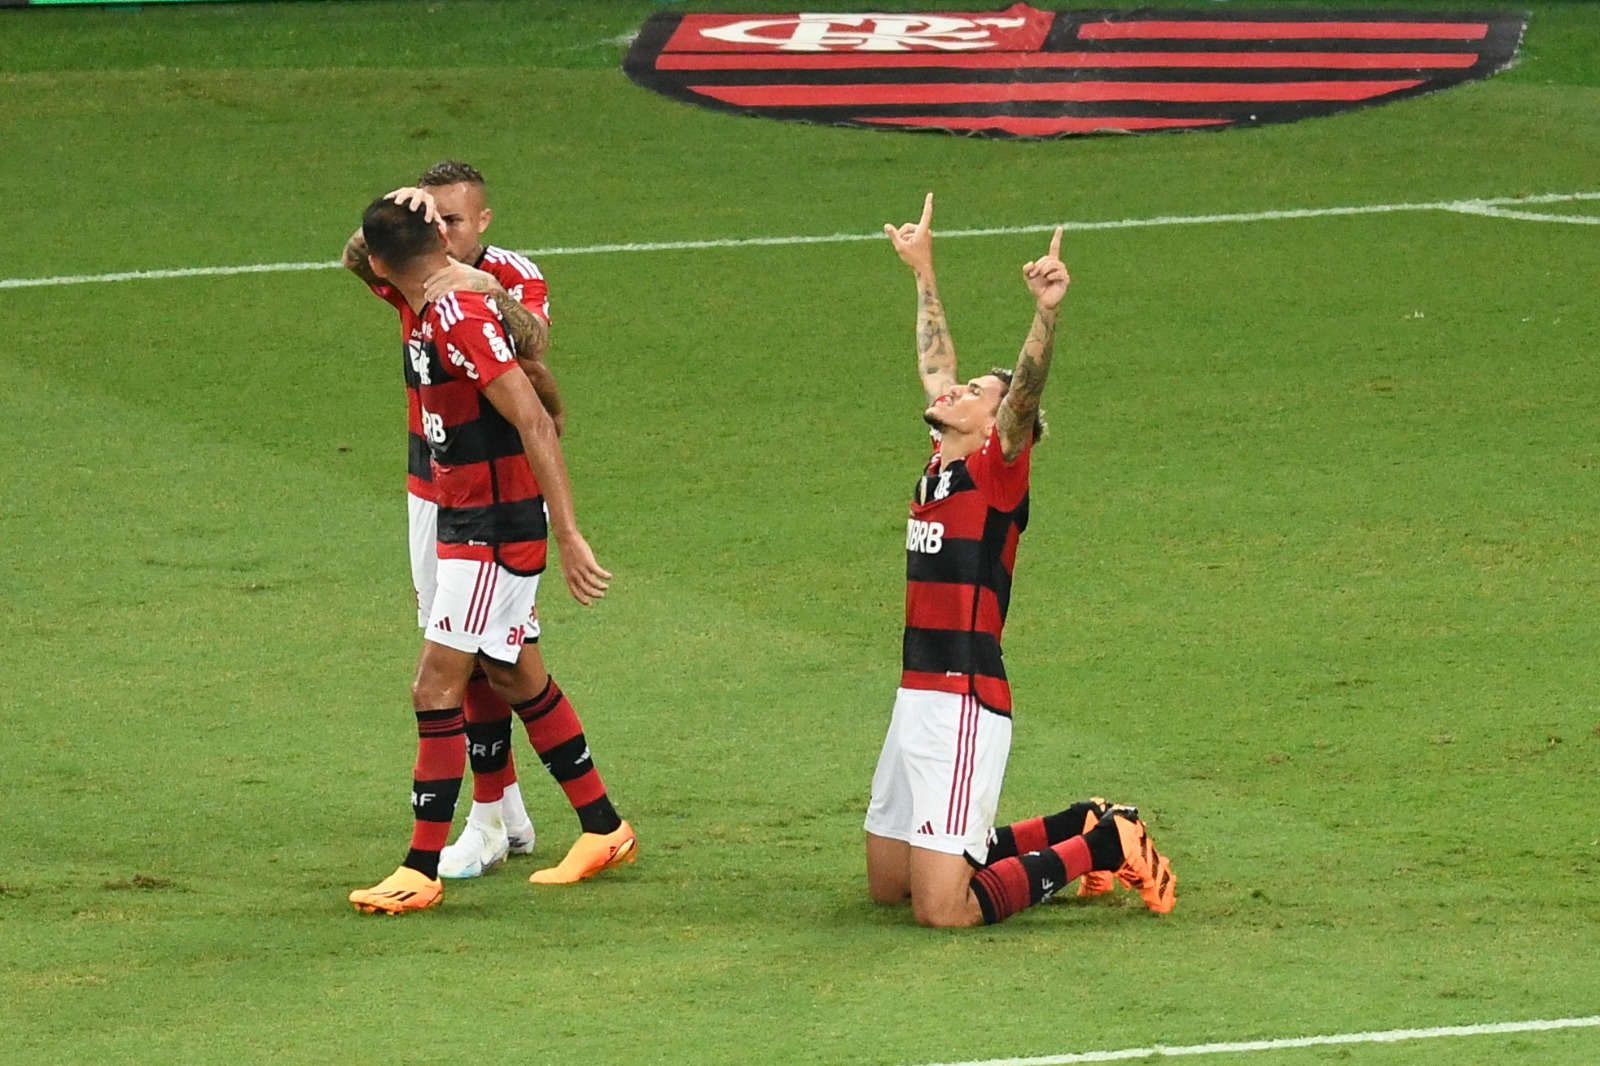 O JOGO MAIS MALUCO DO ANO, Flamengo 8 x 2 Maringá